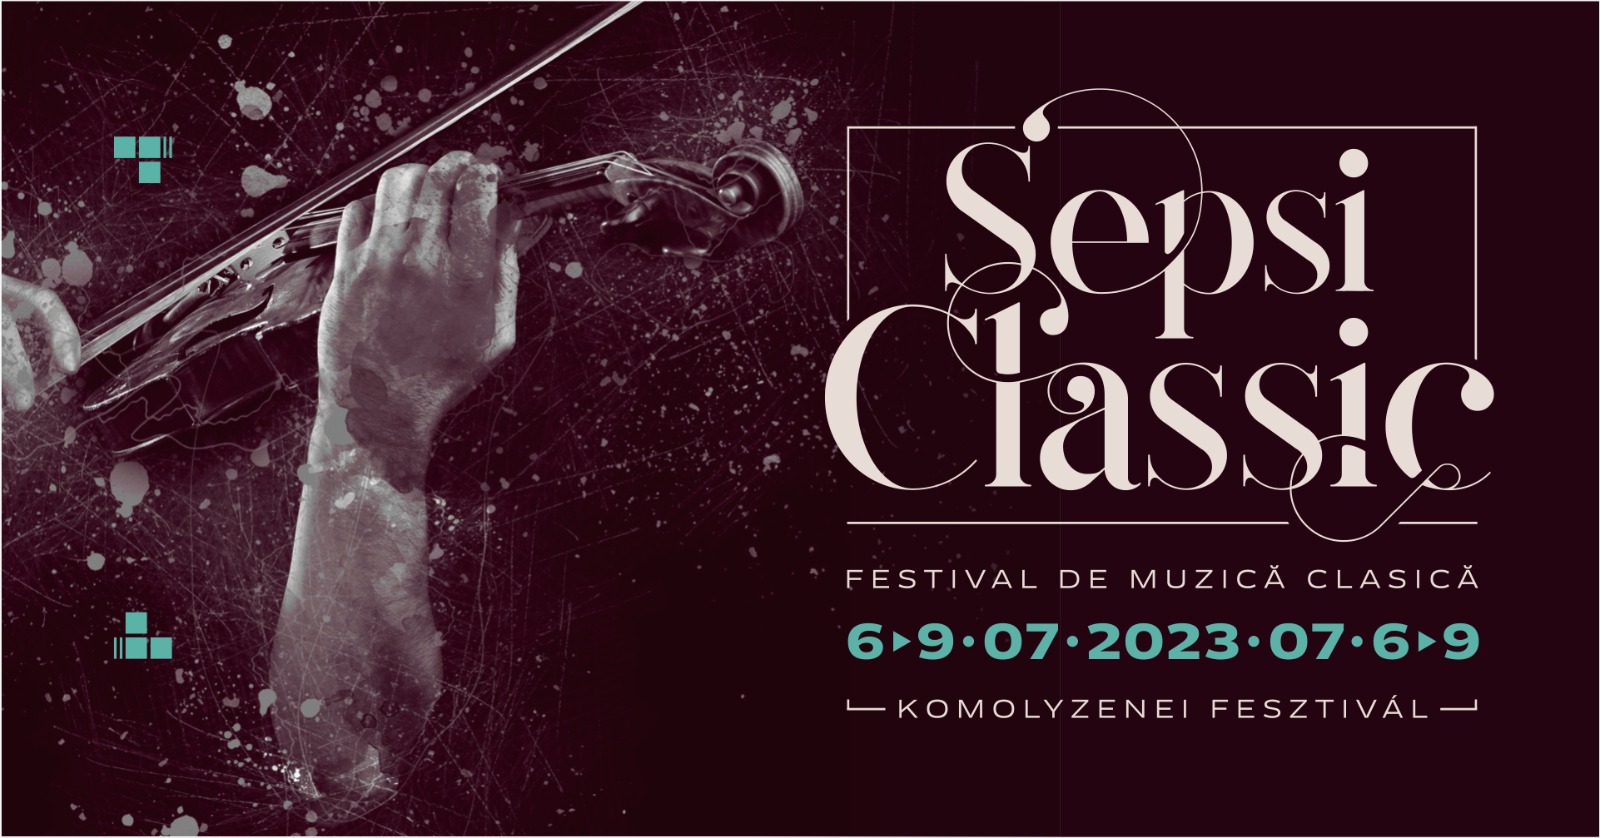 SepsiClassic – Primul festival de muzică clasică din Sfântu Gheorghe